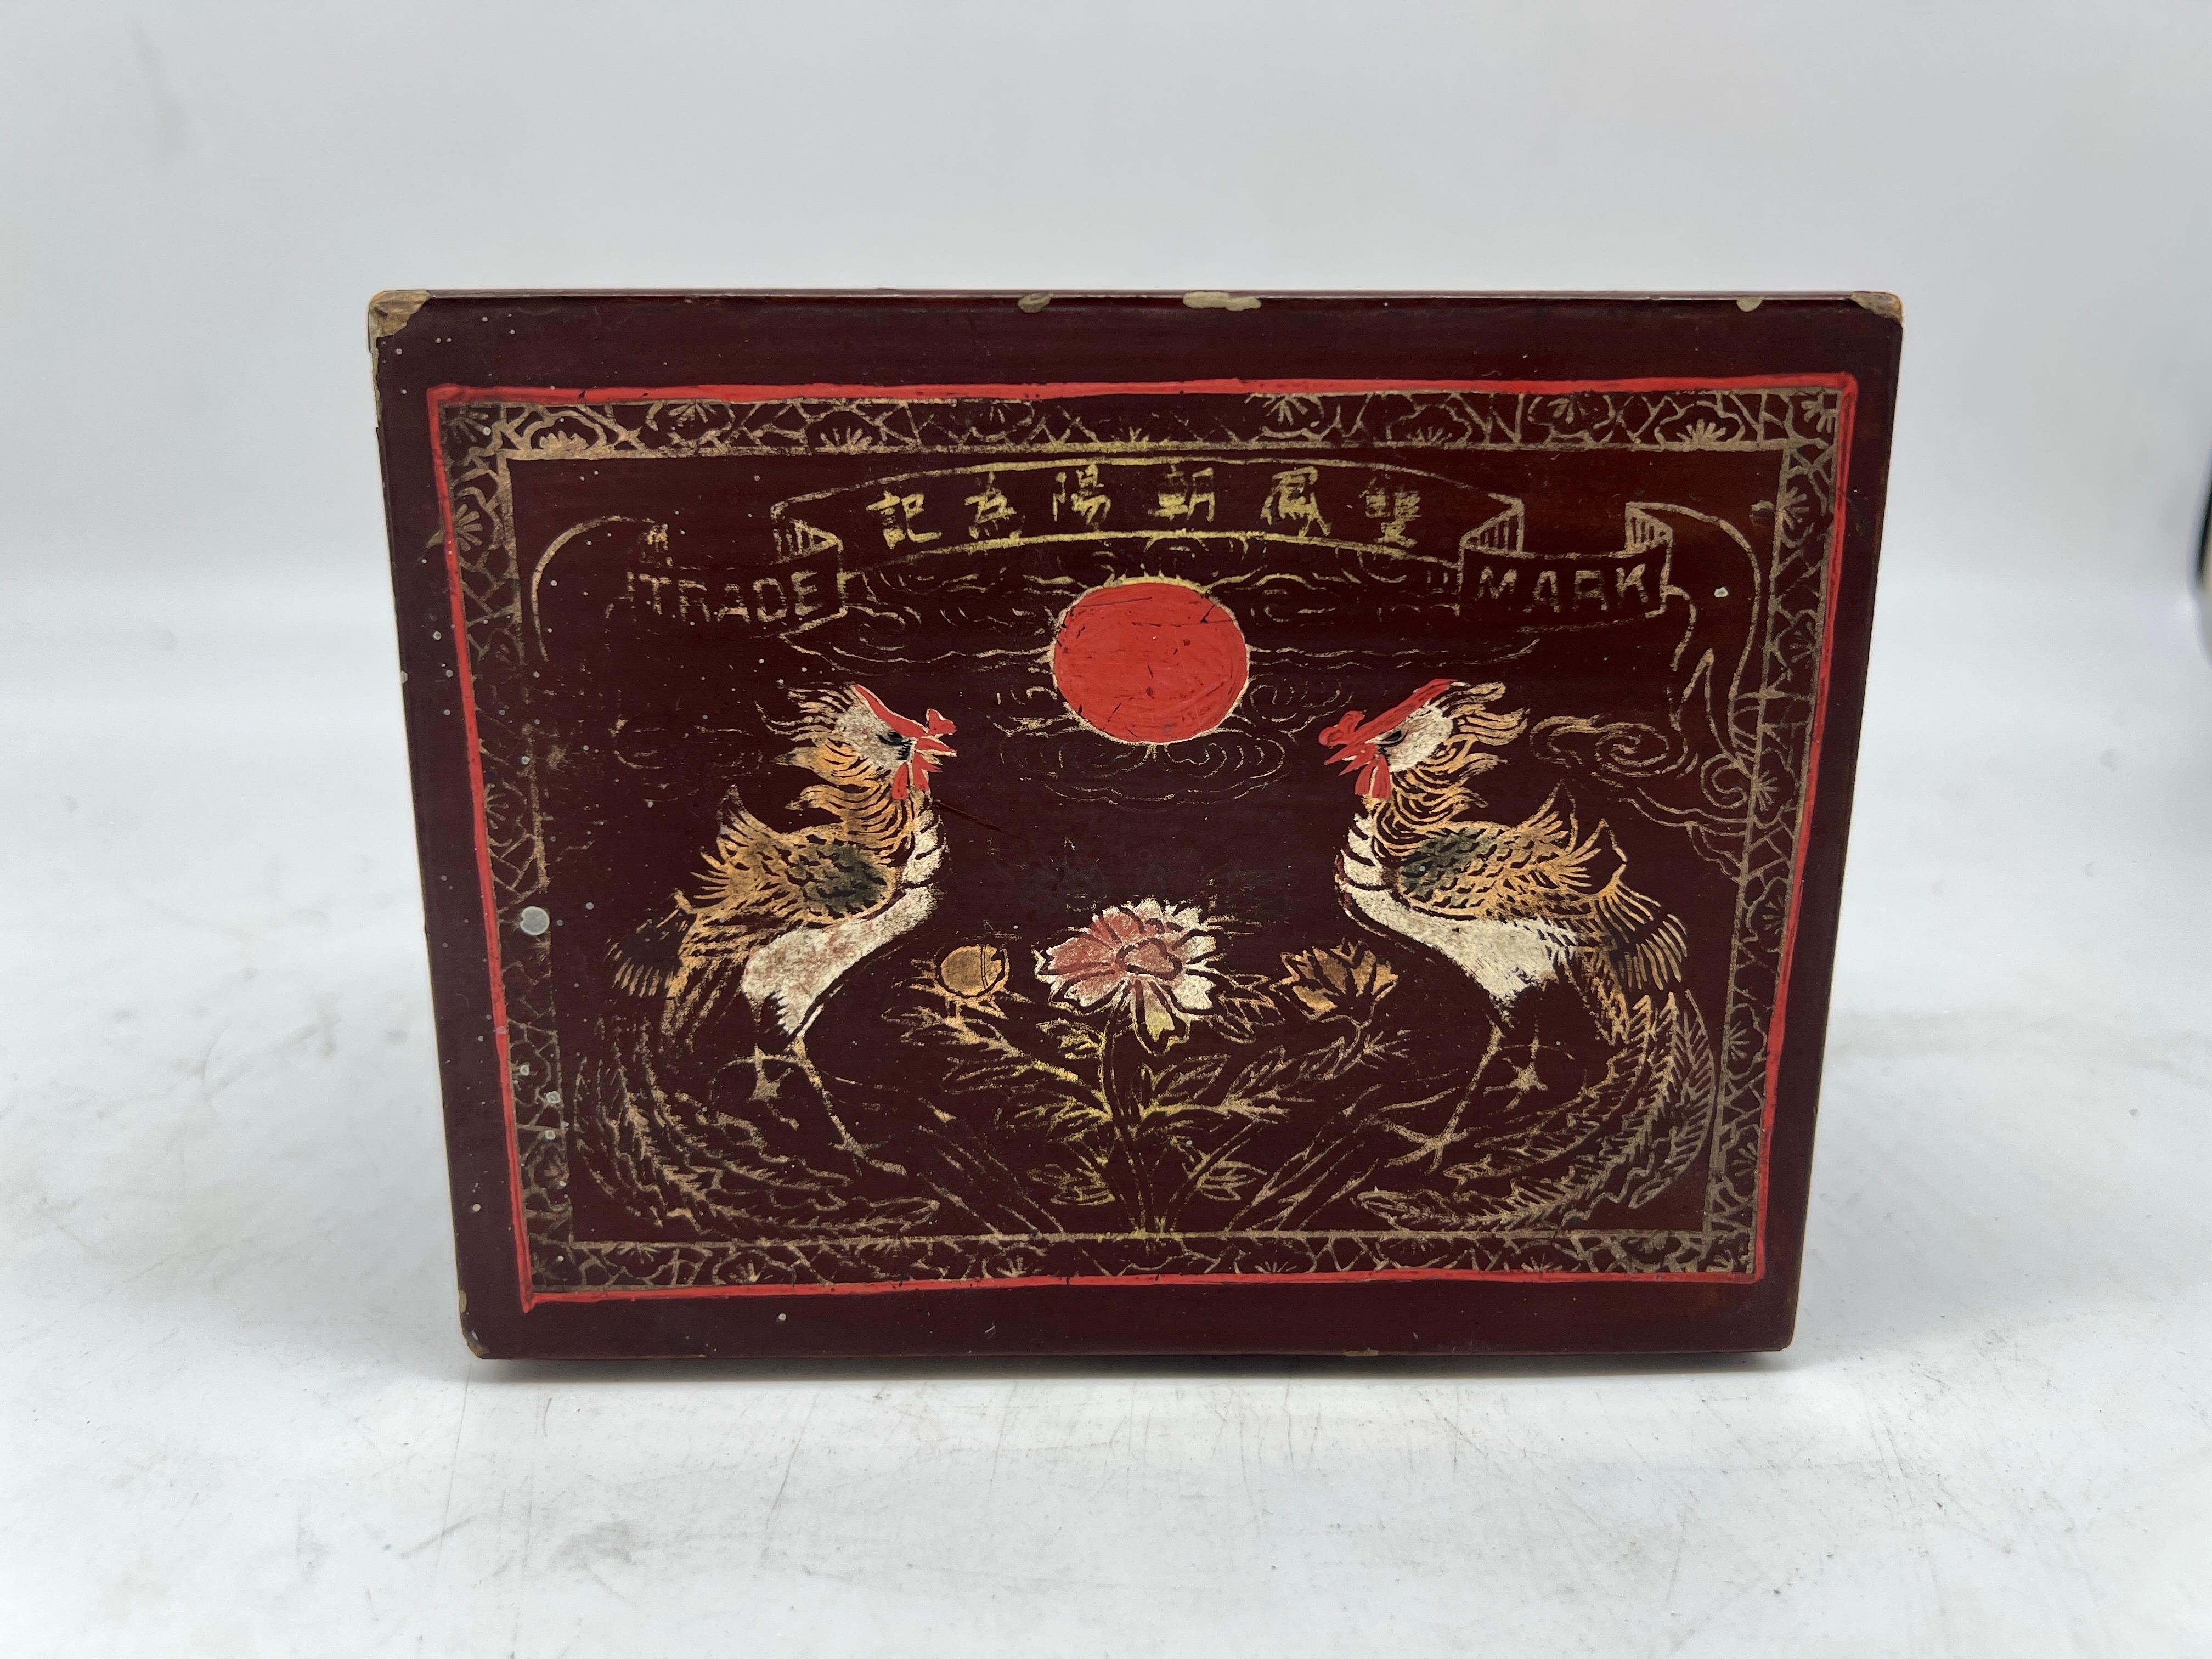 Chinois, début du 20e siècle. 

Une boîte ancienne en laque rouge avec des poulets décorés de dorures, de lettres chinoises et d'autres symboles. Marquage du fabricant sur la boîte.